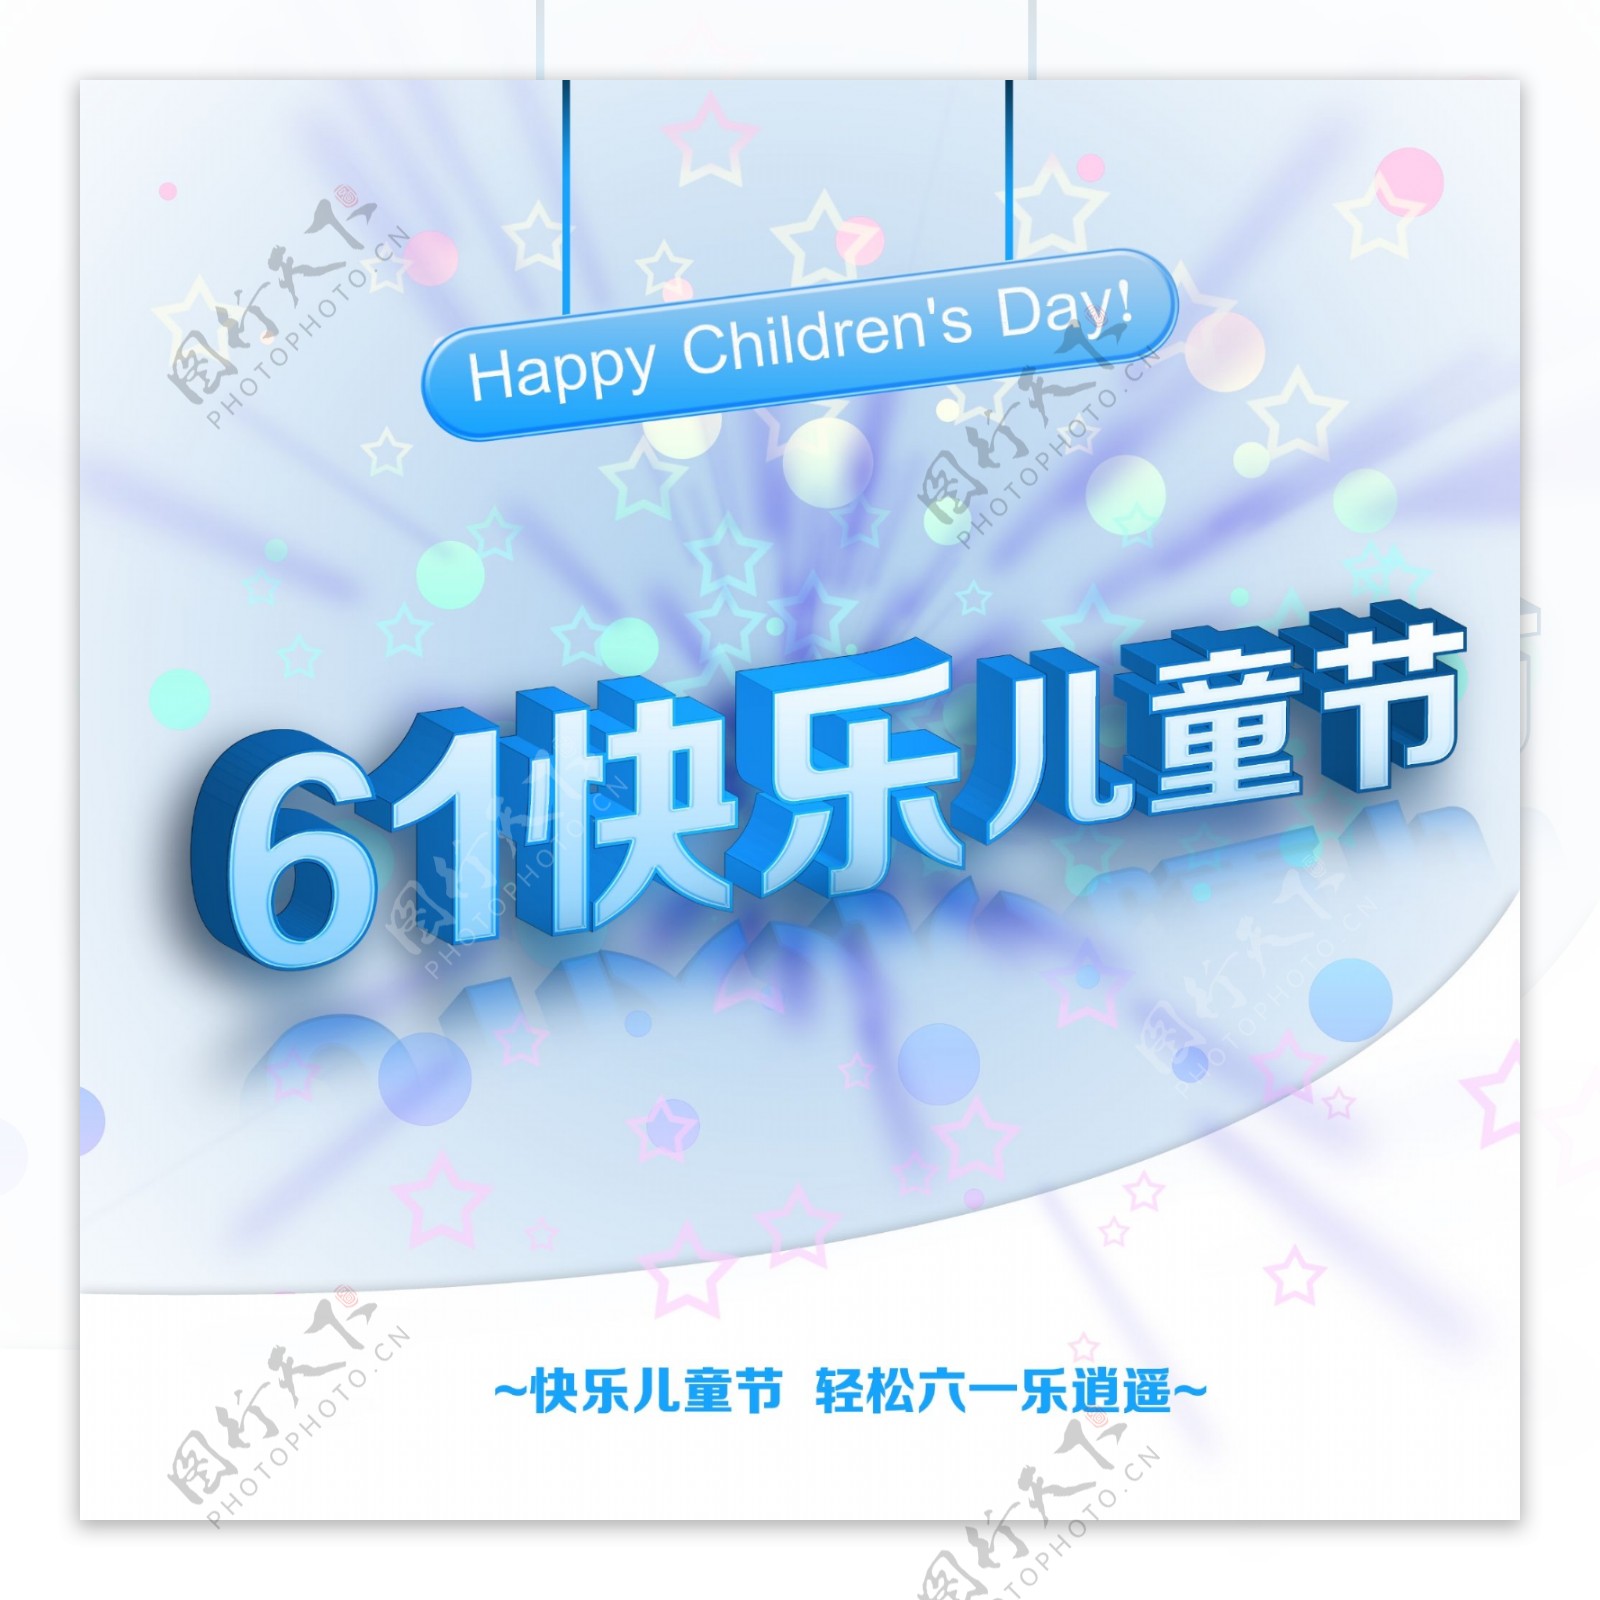 61快乐儿童节海报PSD素材下载